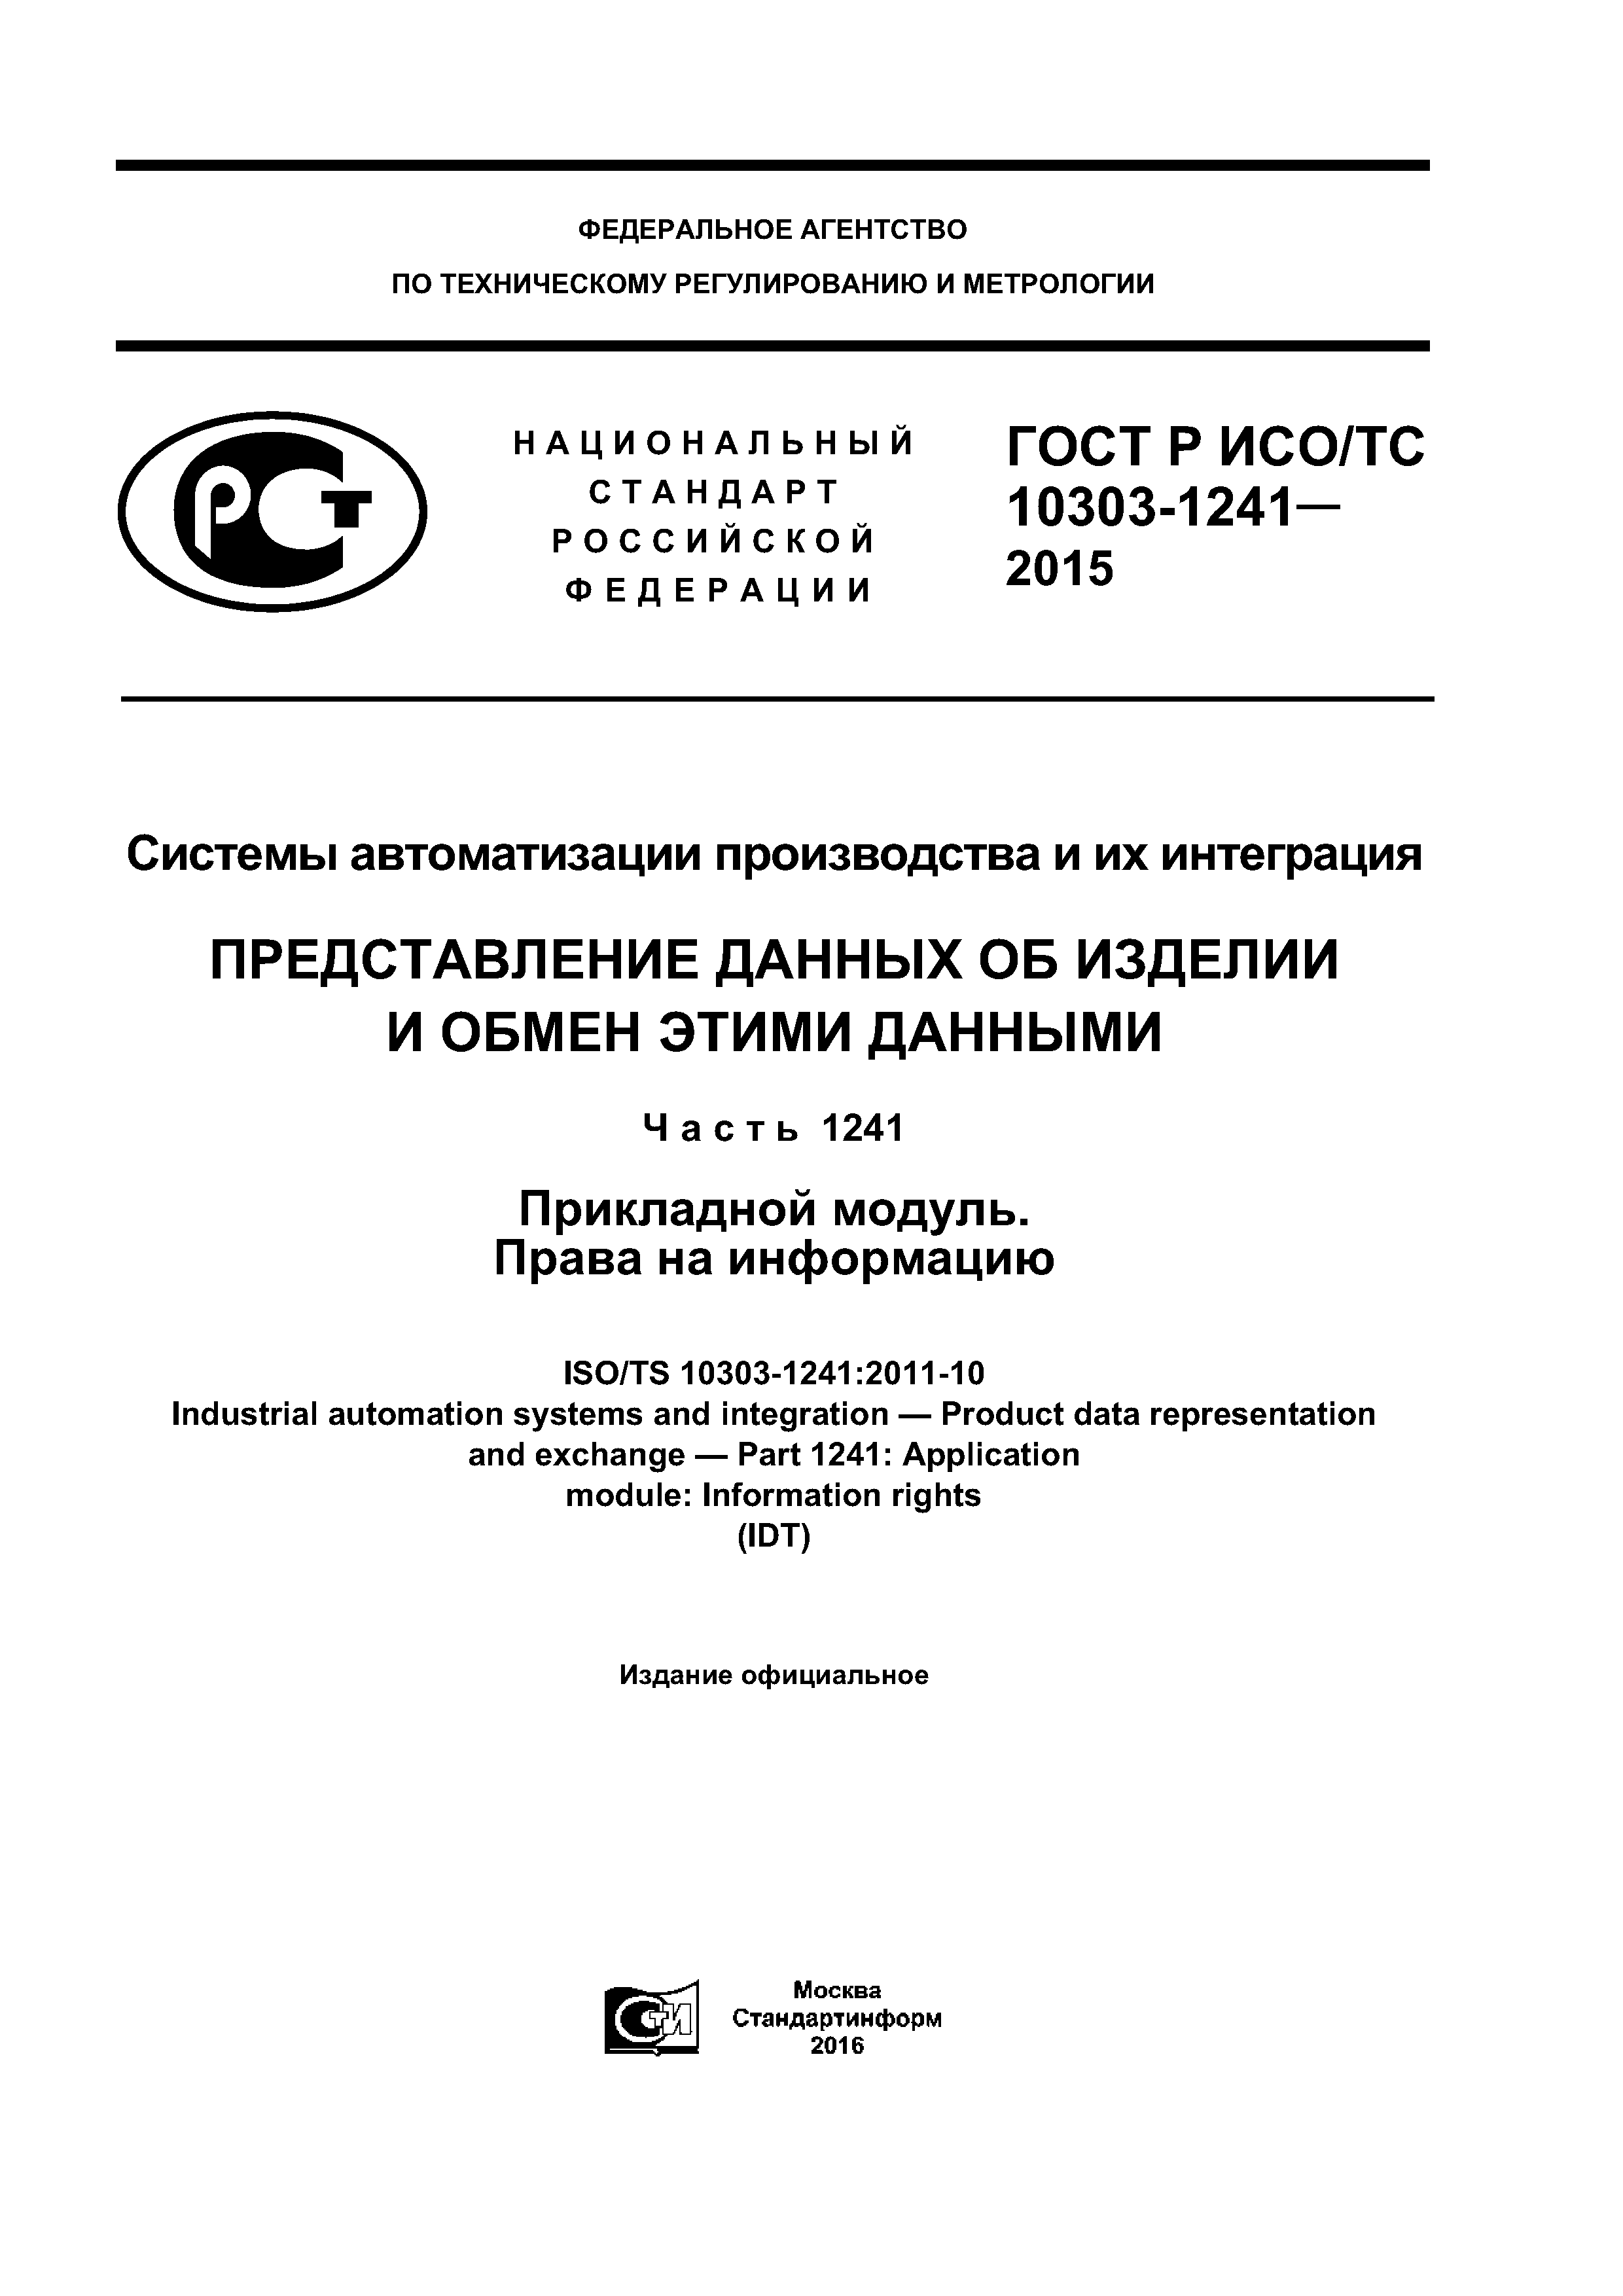 ГОСТ Р ИСО/ТС 10303-1241-2015